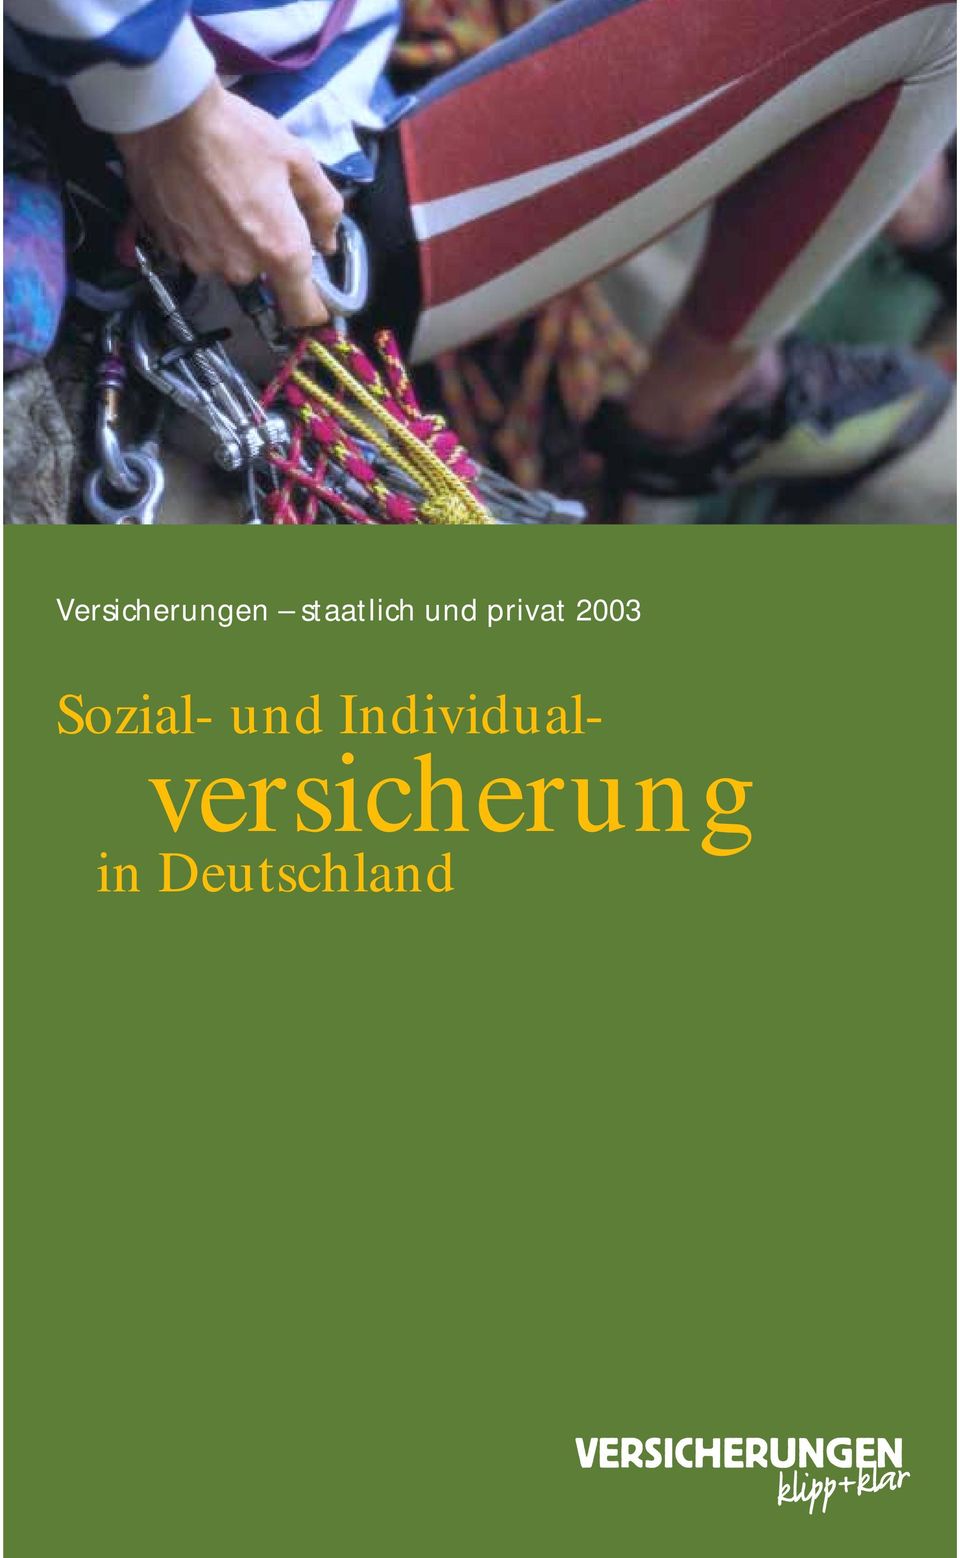 2003 Sozial- und